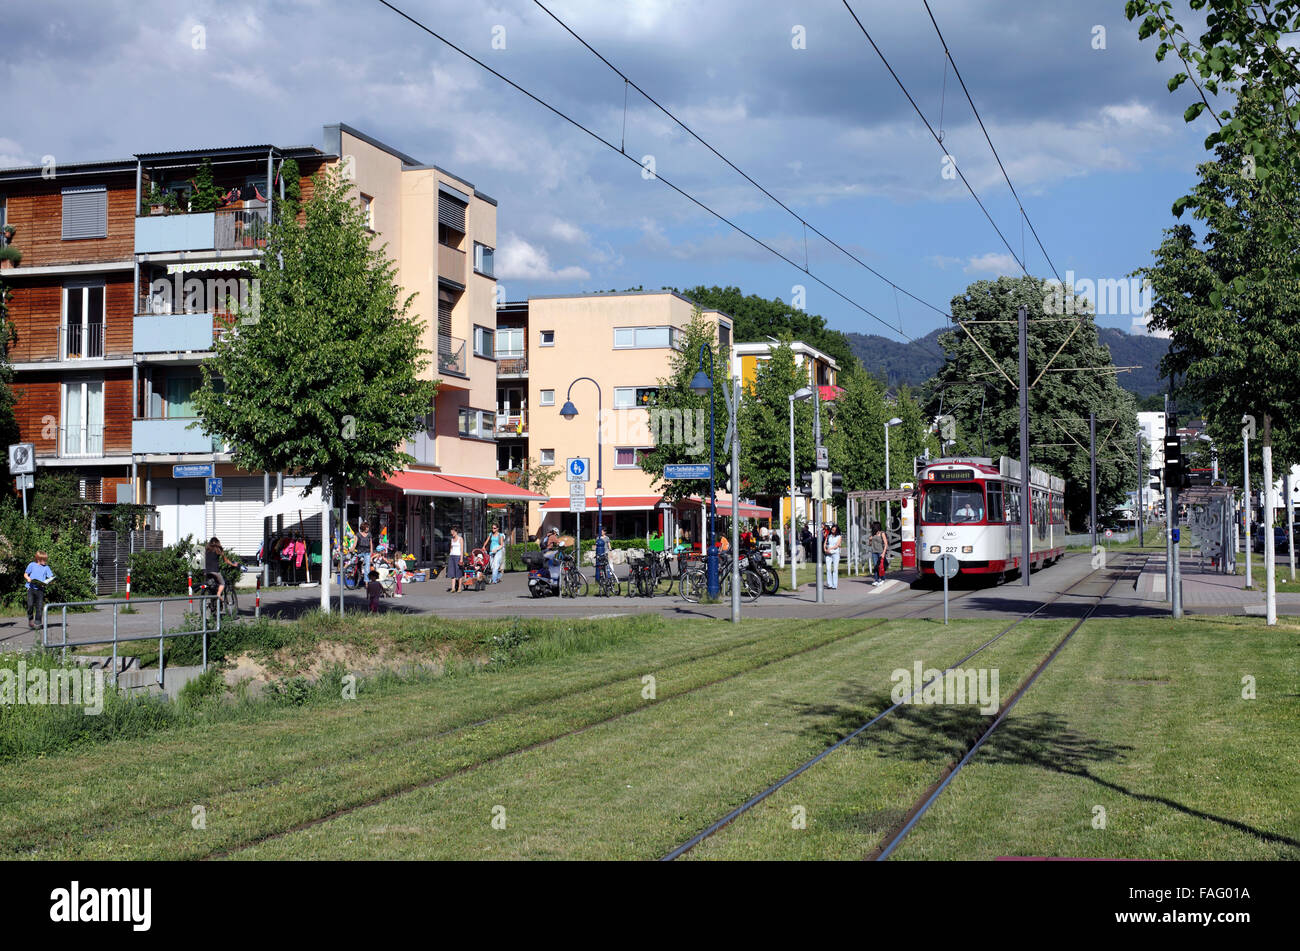 Eine Straßenbahn im Zentrum von Vauban, einem nachhaltigen Vorort von Freiburg Im Breisgau, Deutschland. Stockfoto